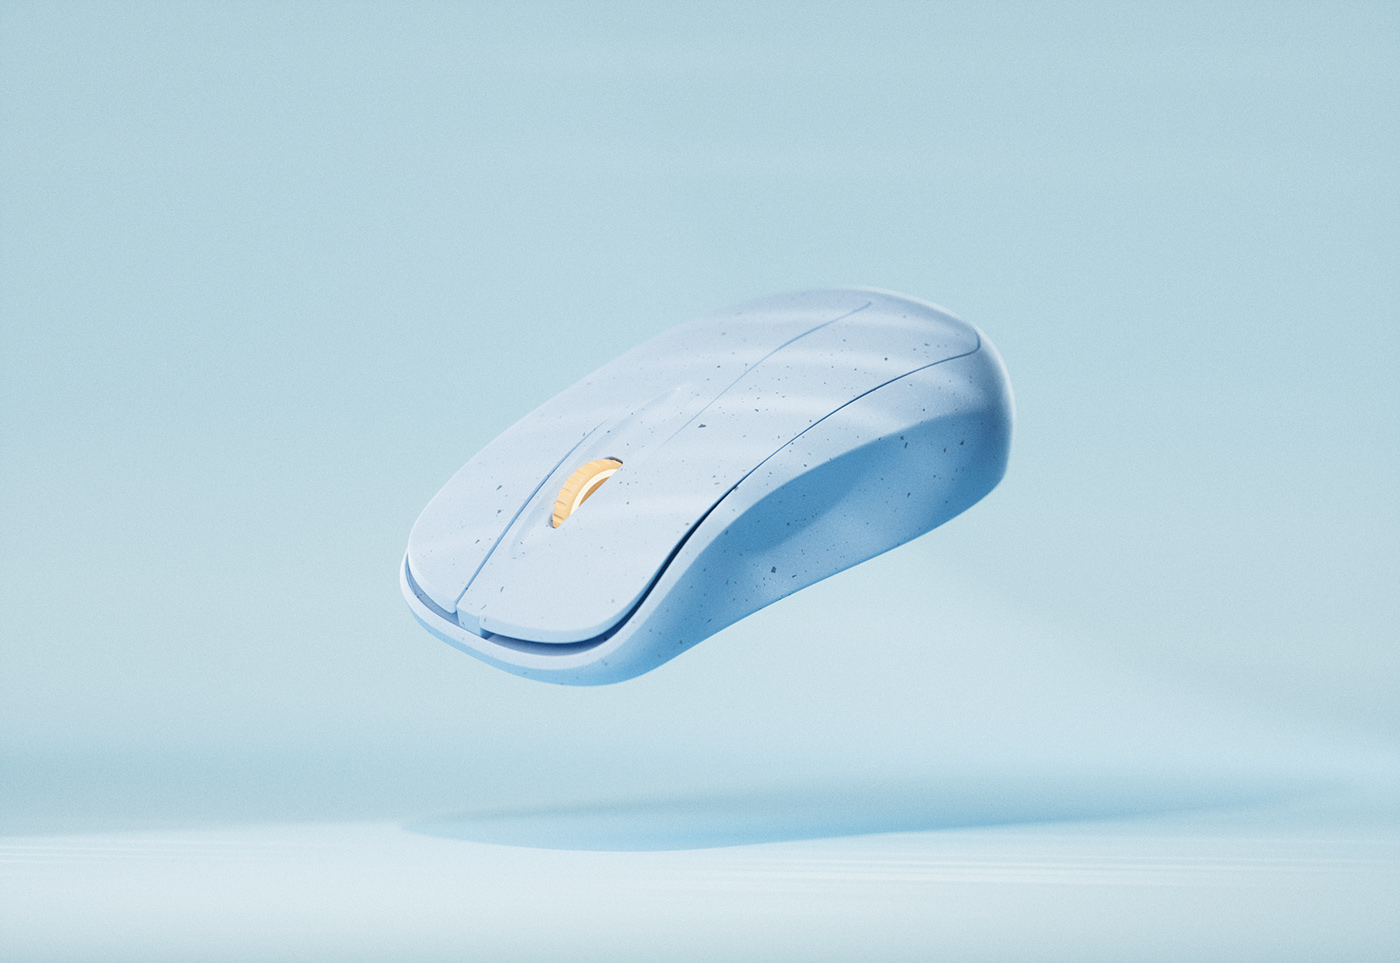 3D c4d octane plastic wireless mouse